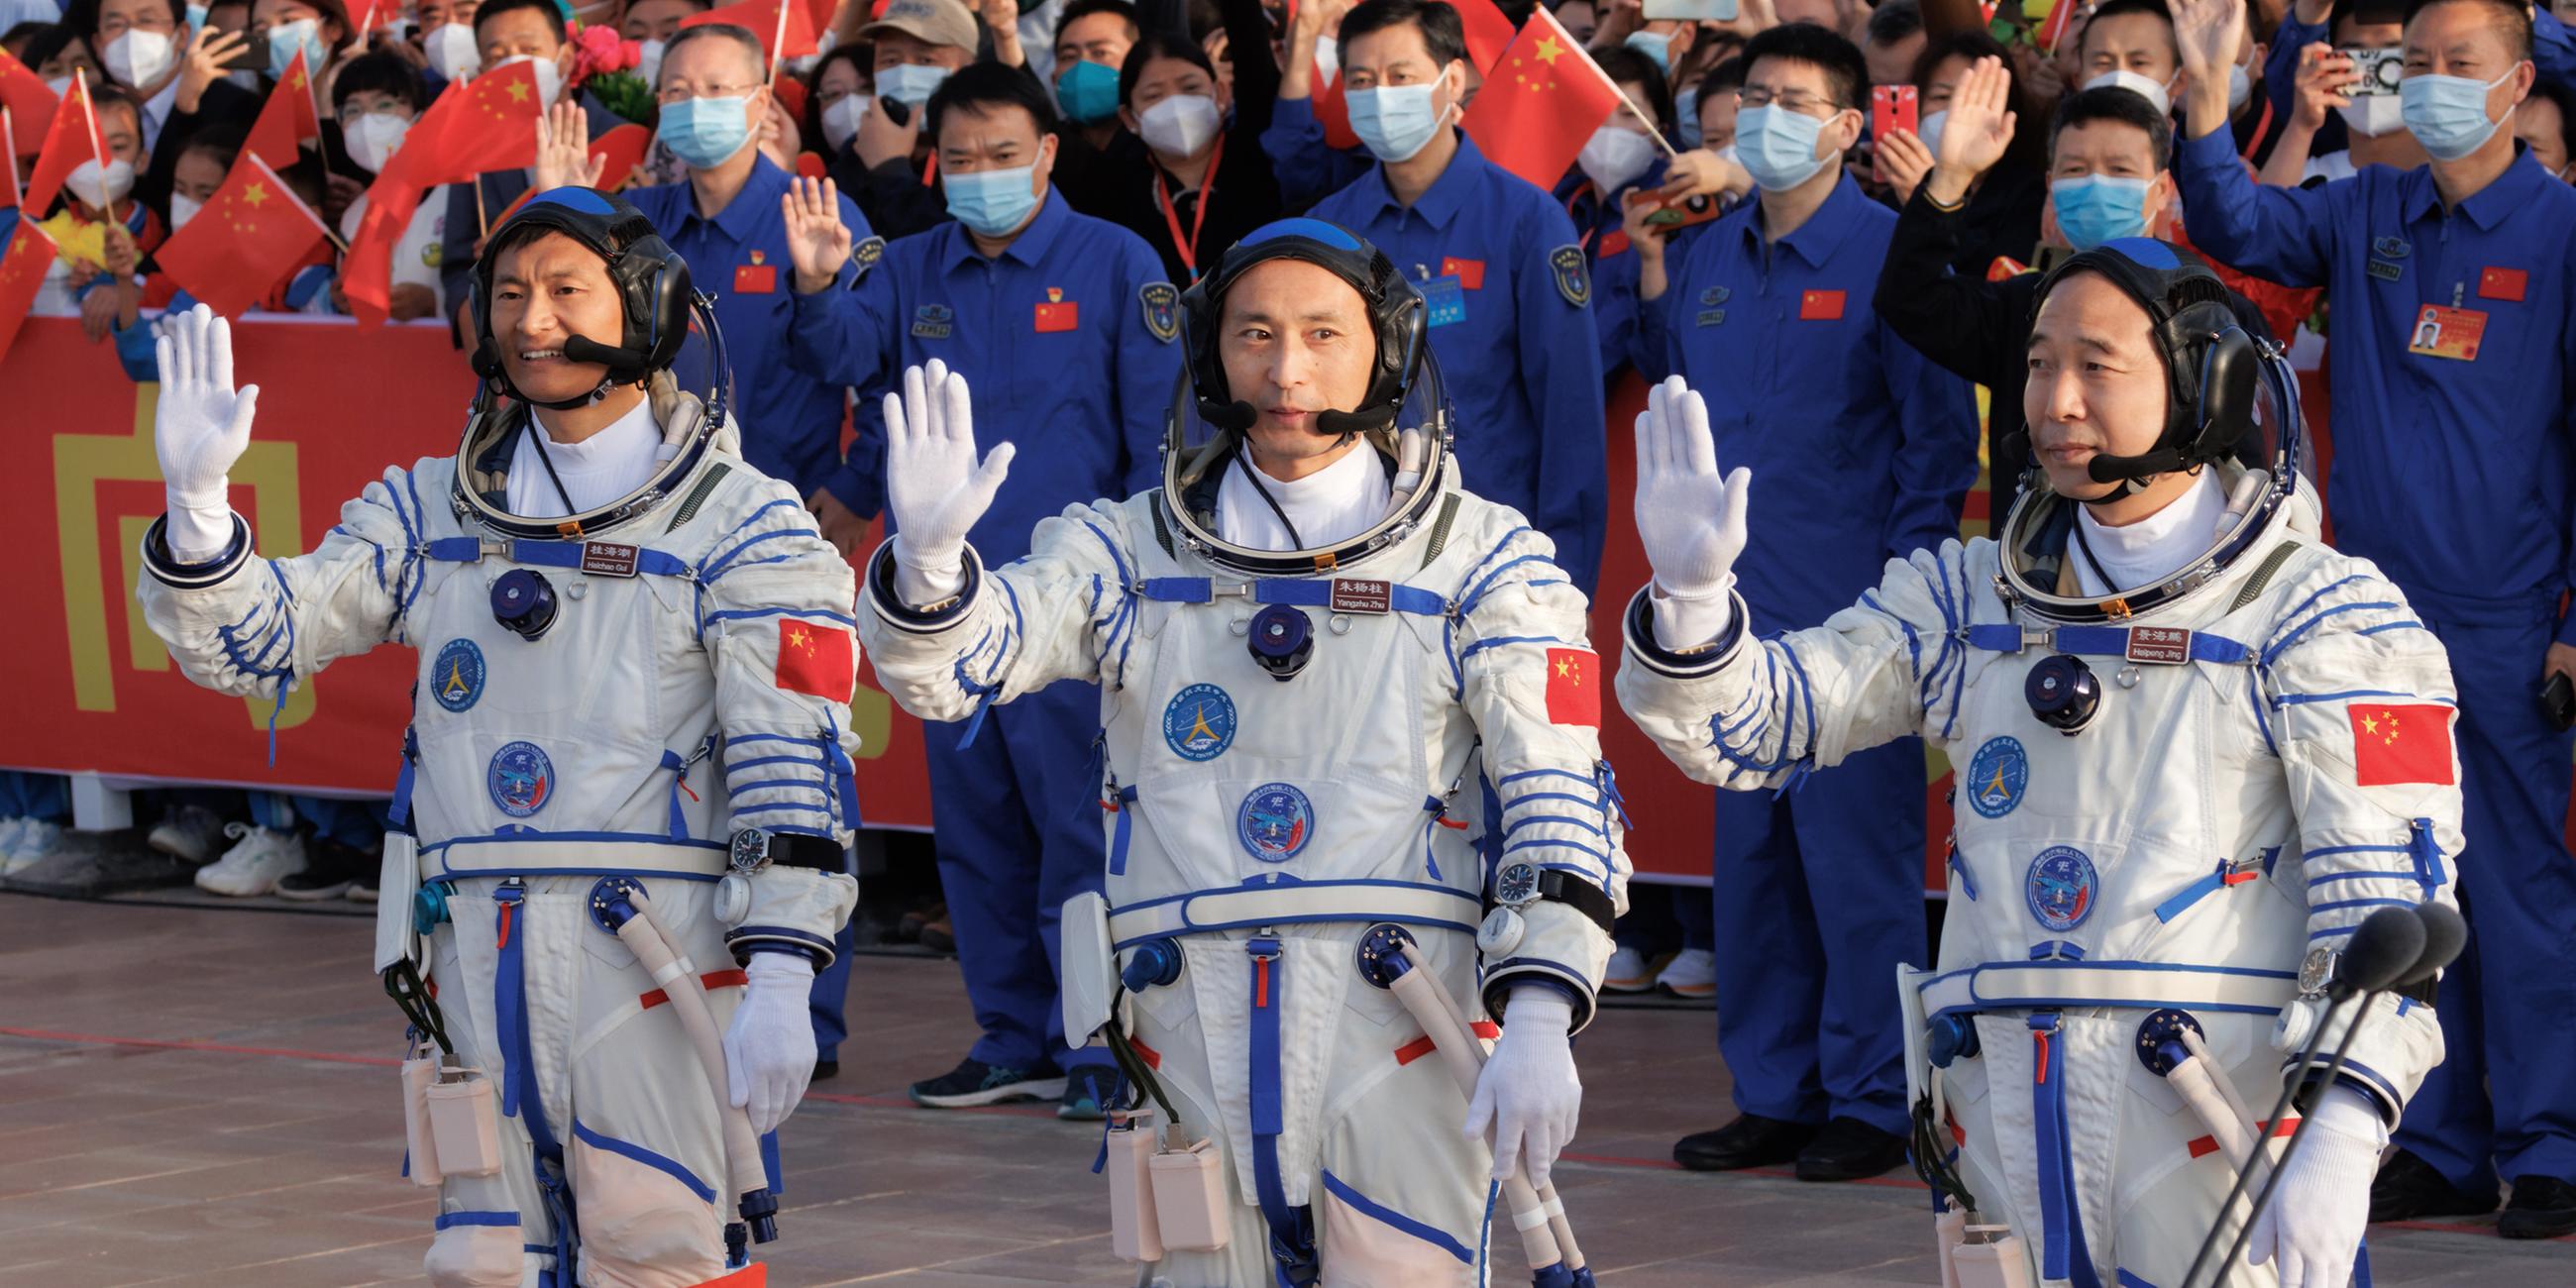 Die drei Astronauten winken während der Abschiedszeremonie, bevor sie zum Start der Raumflugmission Shenzhou-16 aufbrechen.